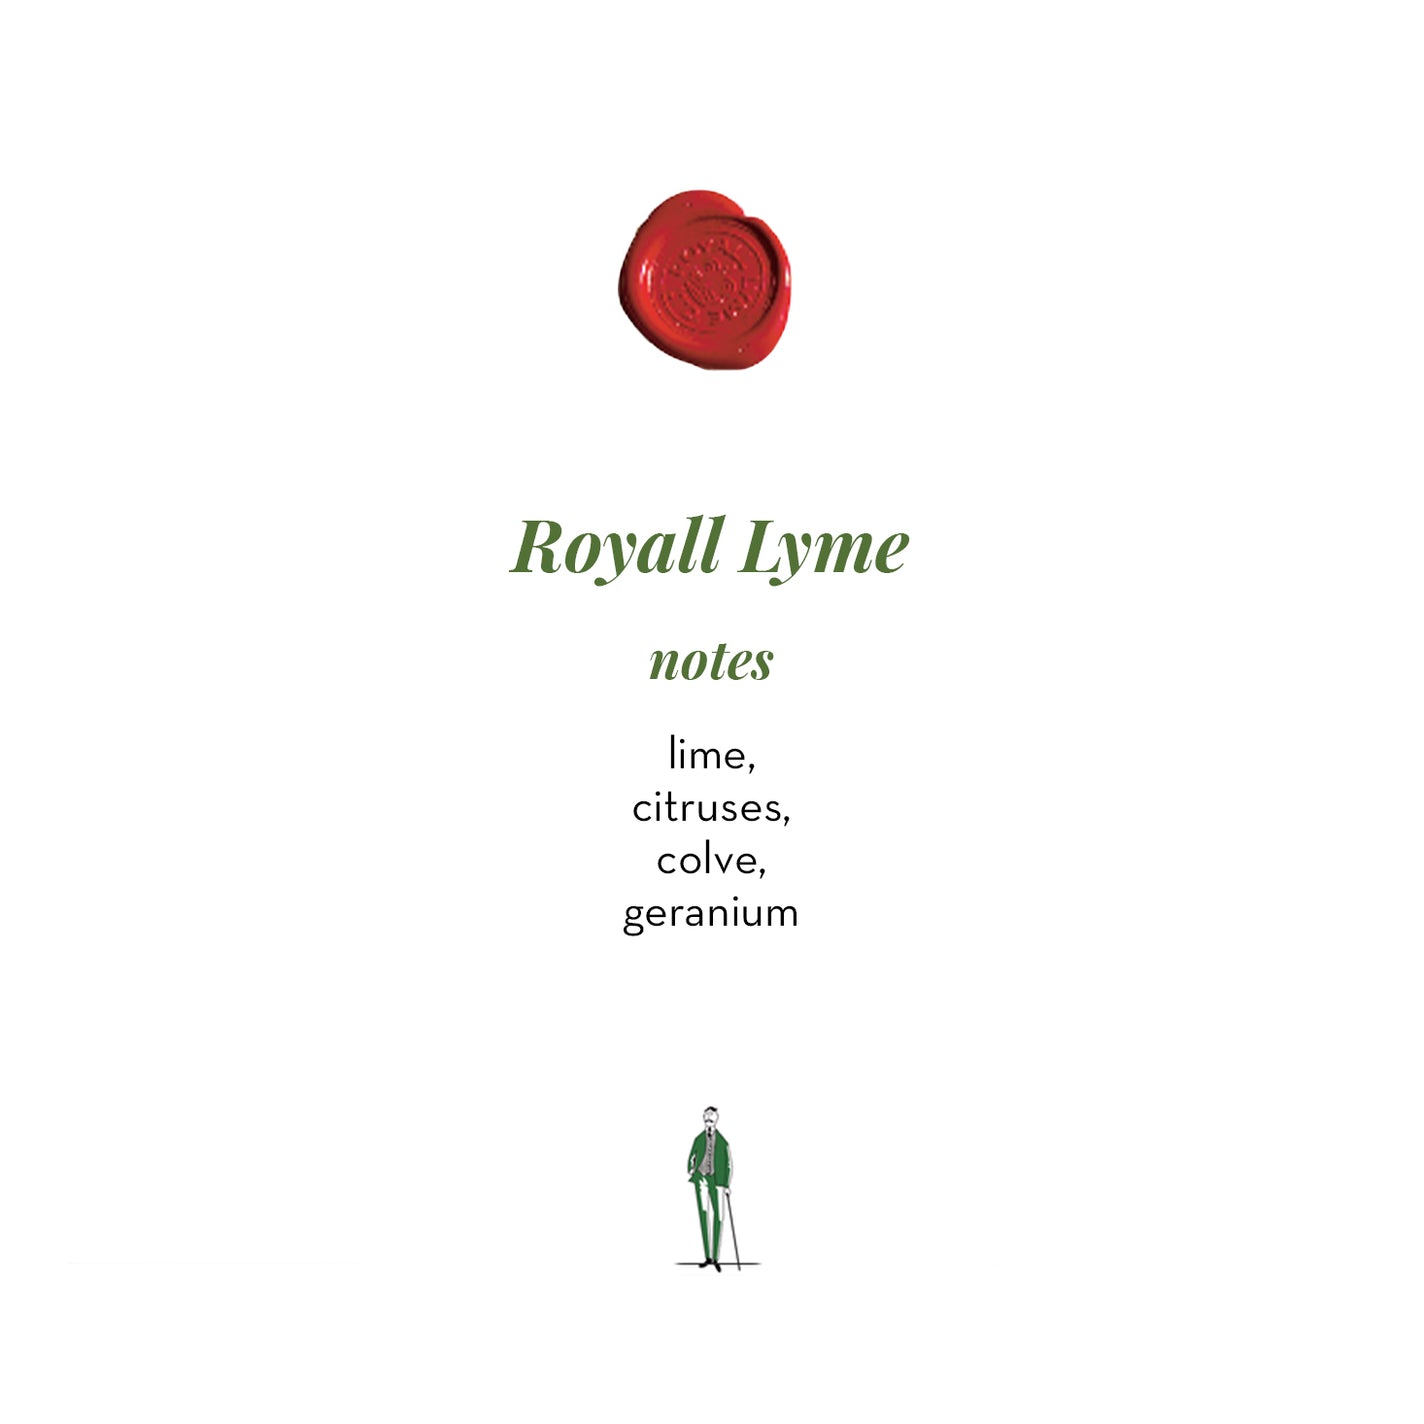 Royall Lyme Natural Spray - 120ml